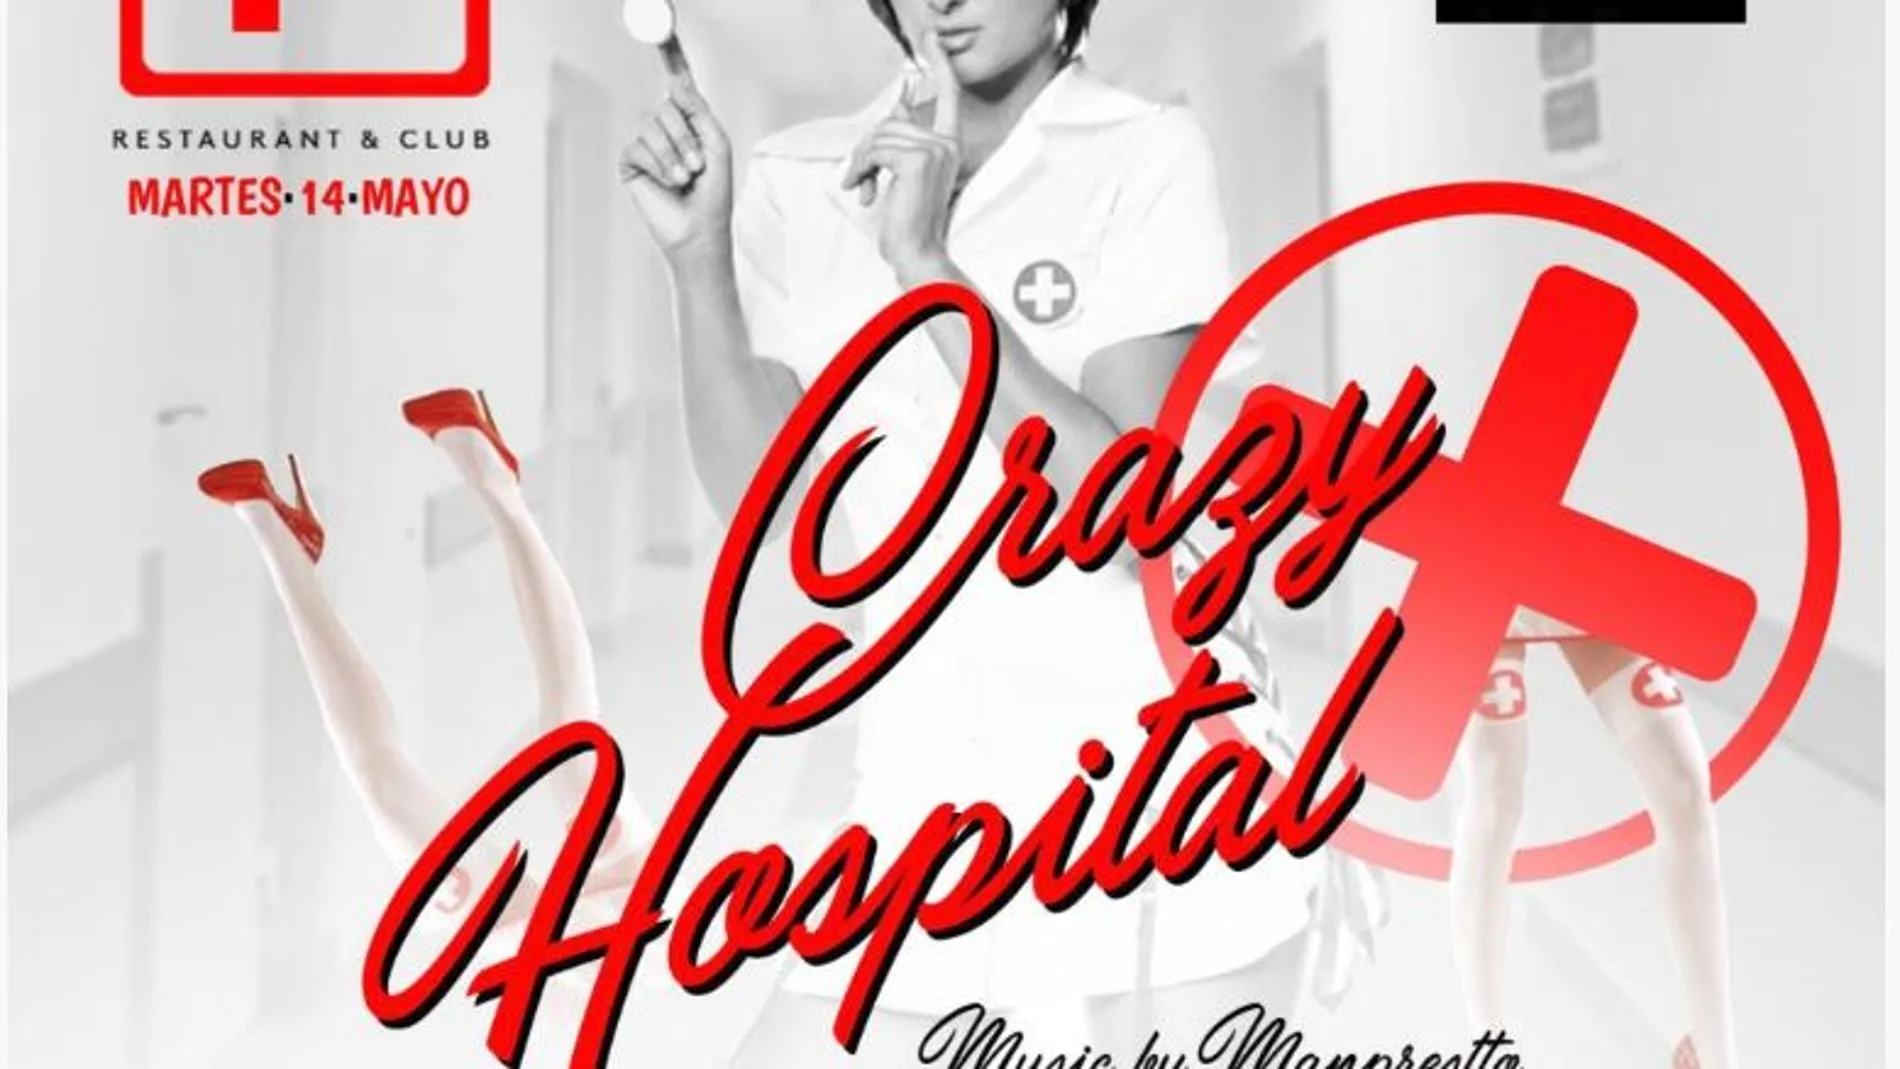 Cartel de la fiesta “Crazy hospital”, la fiesta sexista que denuncia el CGE